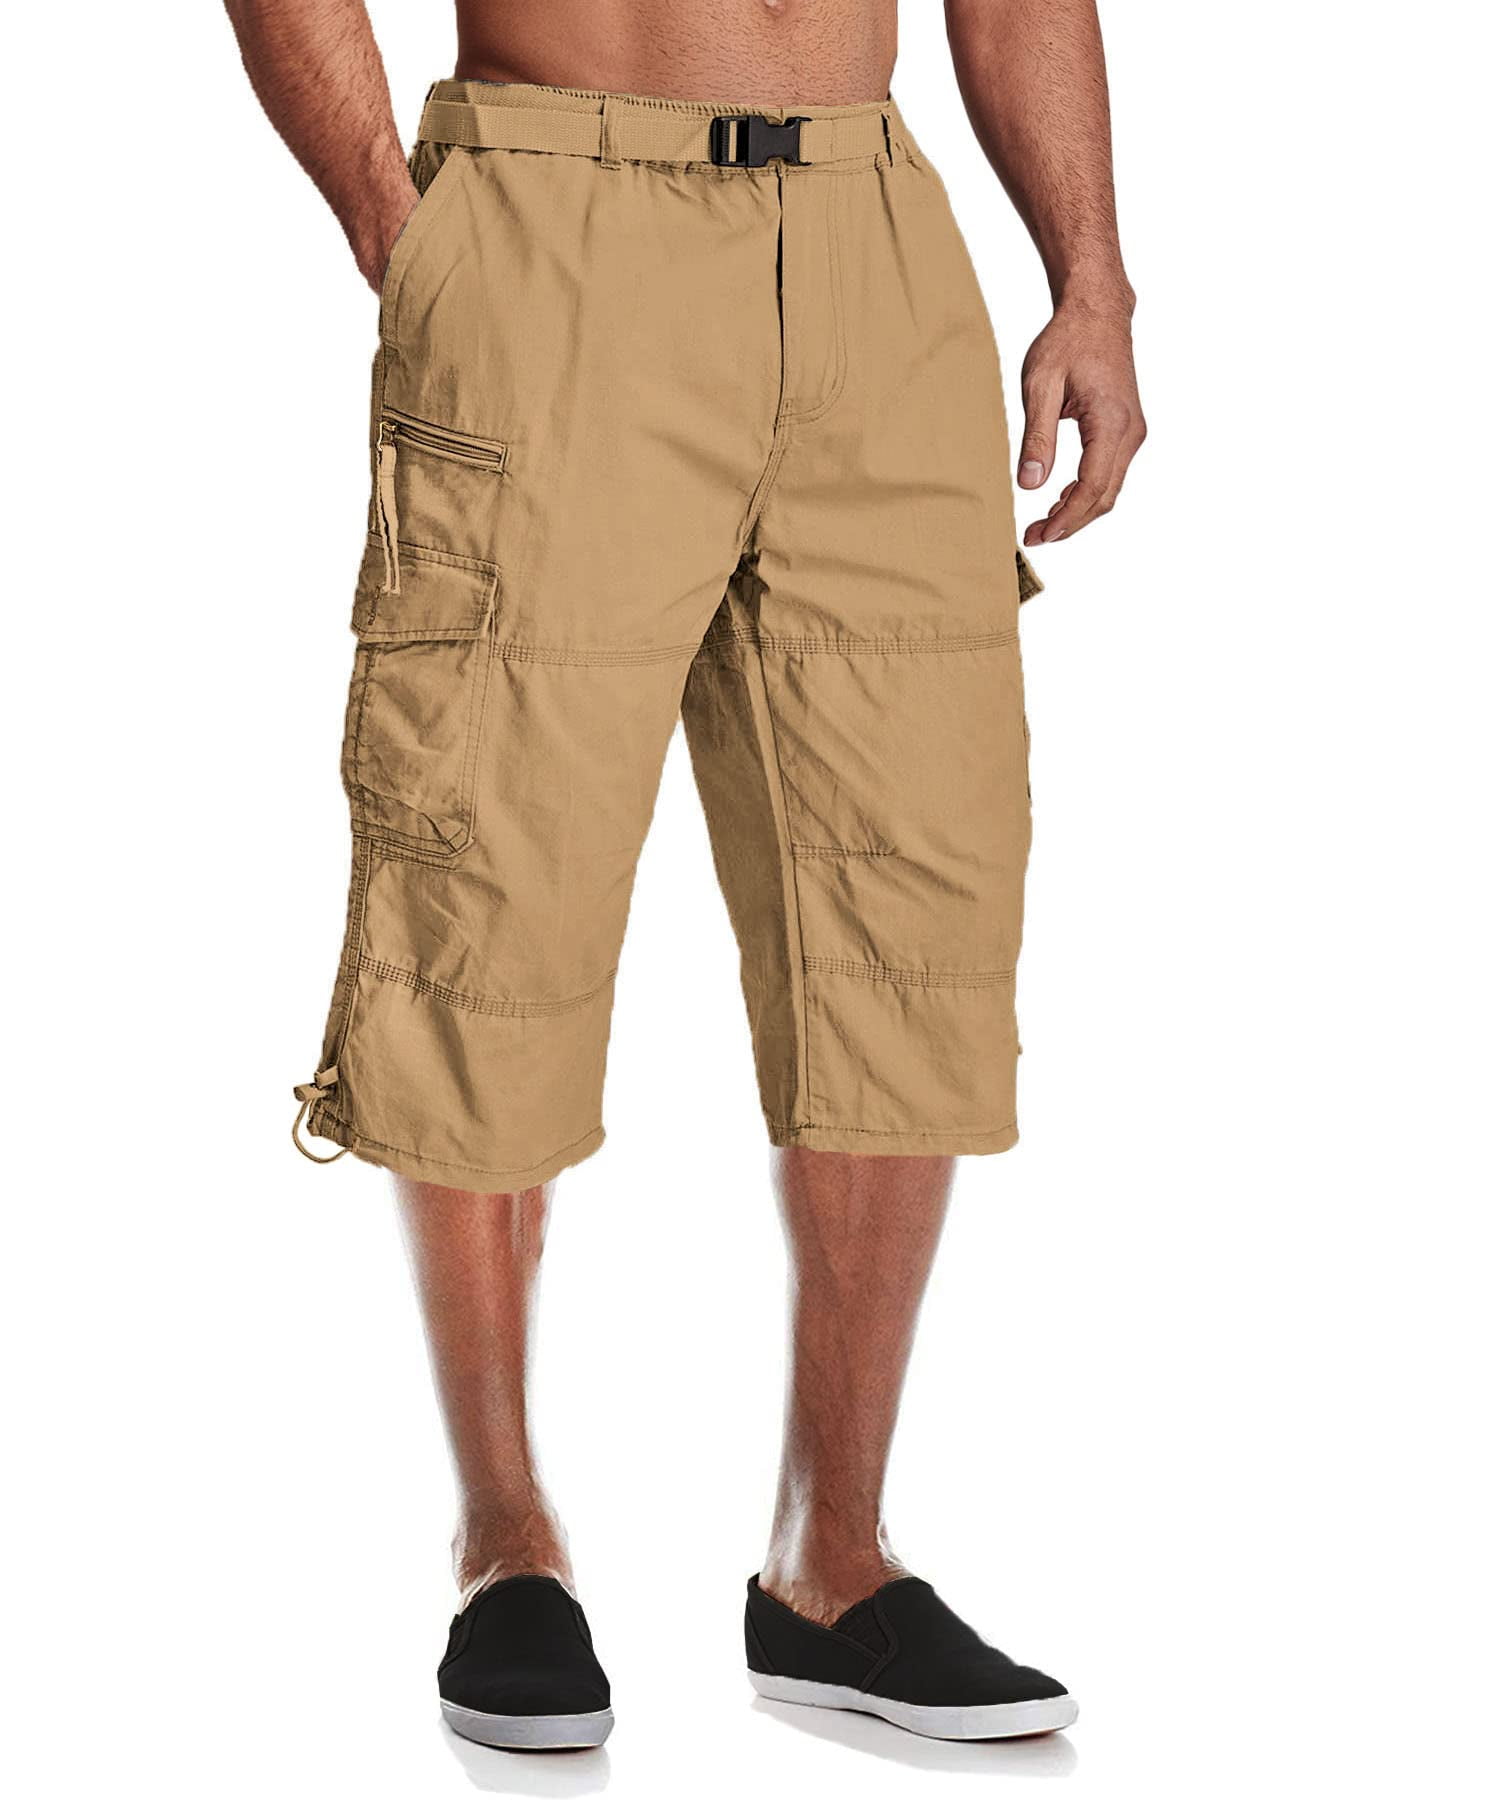 Men's Capri Pants Twill Elastic Below Knee Cargo Shorts with 7 Pockets 3/4  Capri Long Shorts 